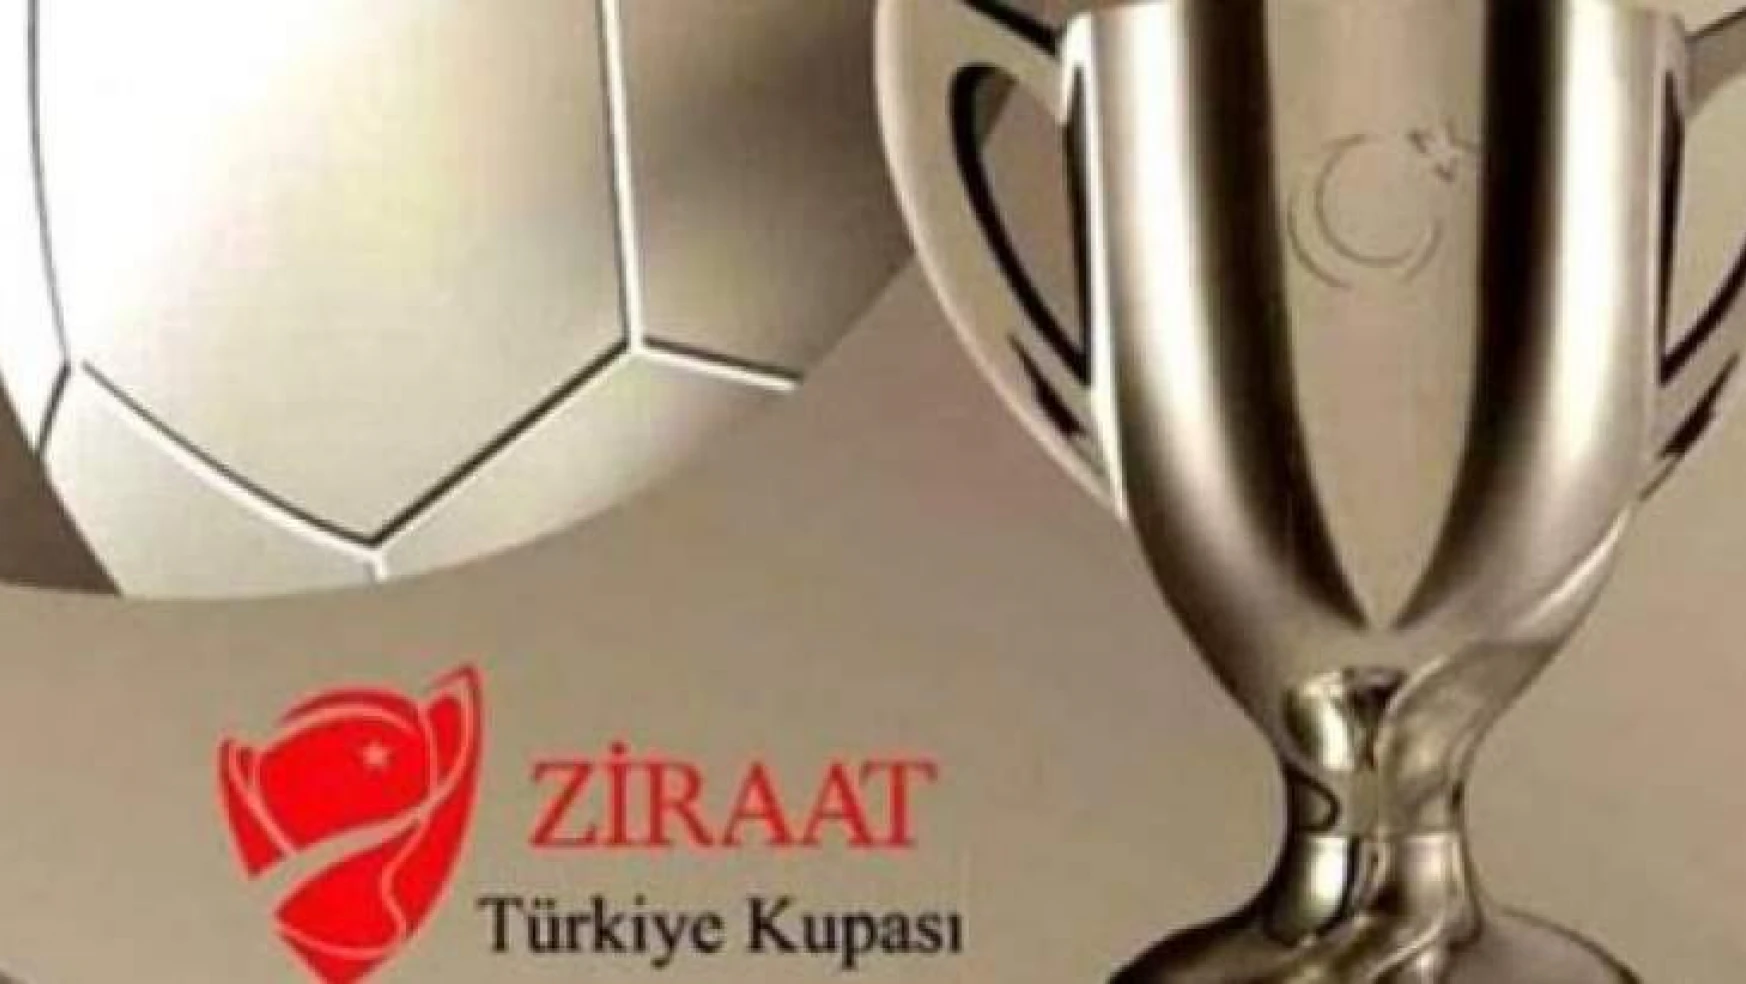 EYMS'nin Ziraat Türkiye Kupası'ndaki Rakibi belli oldu